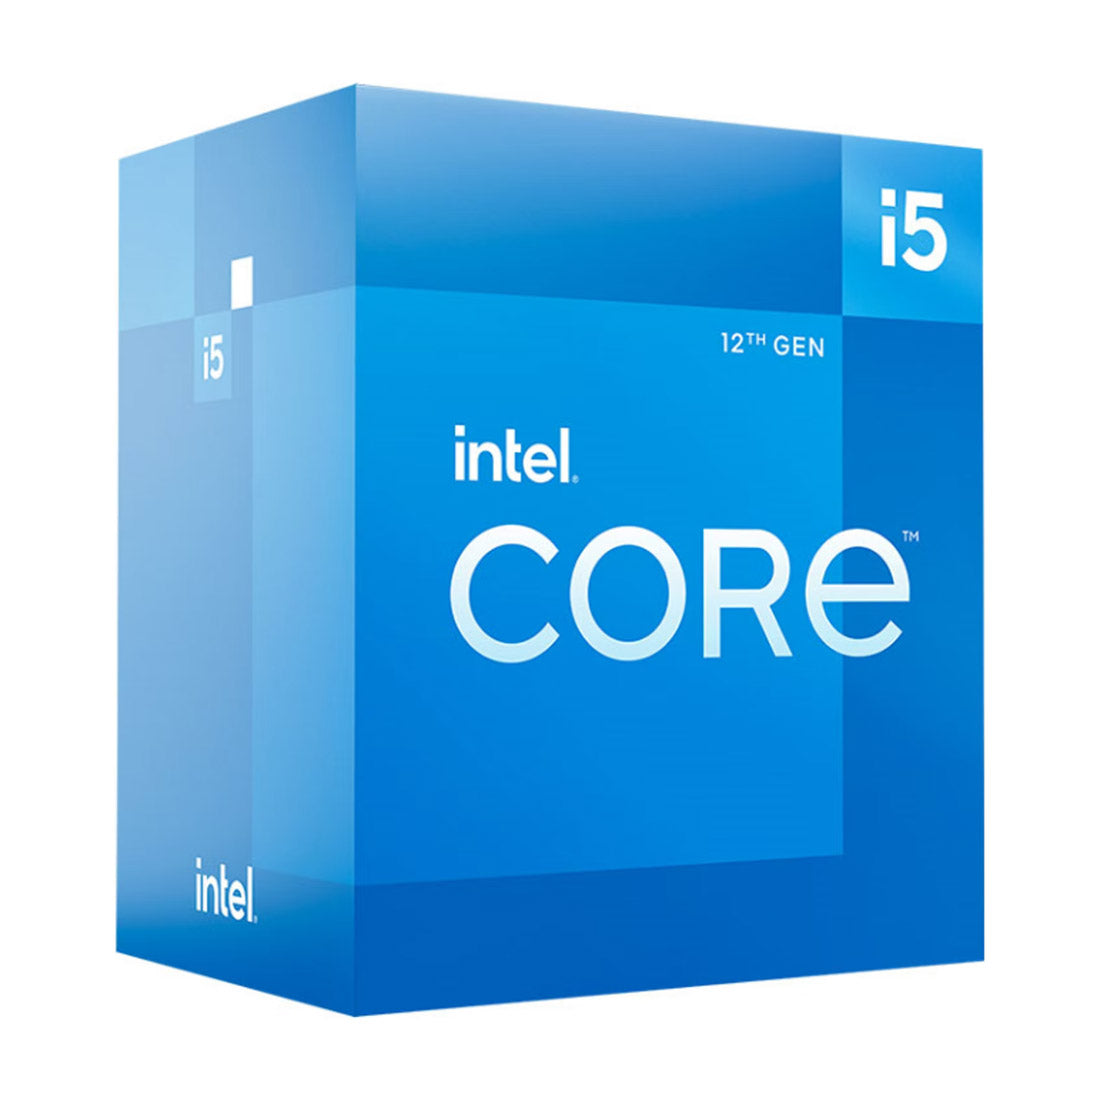 Intel Core 12th Gen i5-12400 LGA1700 Desktop Processor 6 Cores up to 4.4GHz 18MB Cache